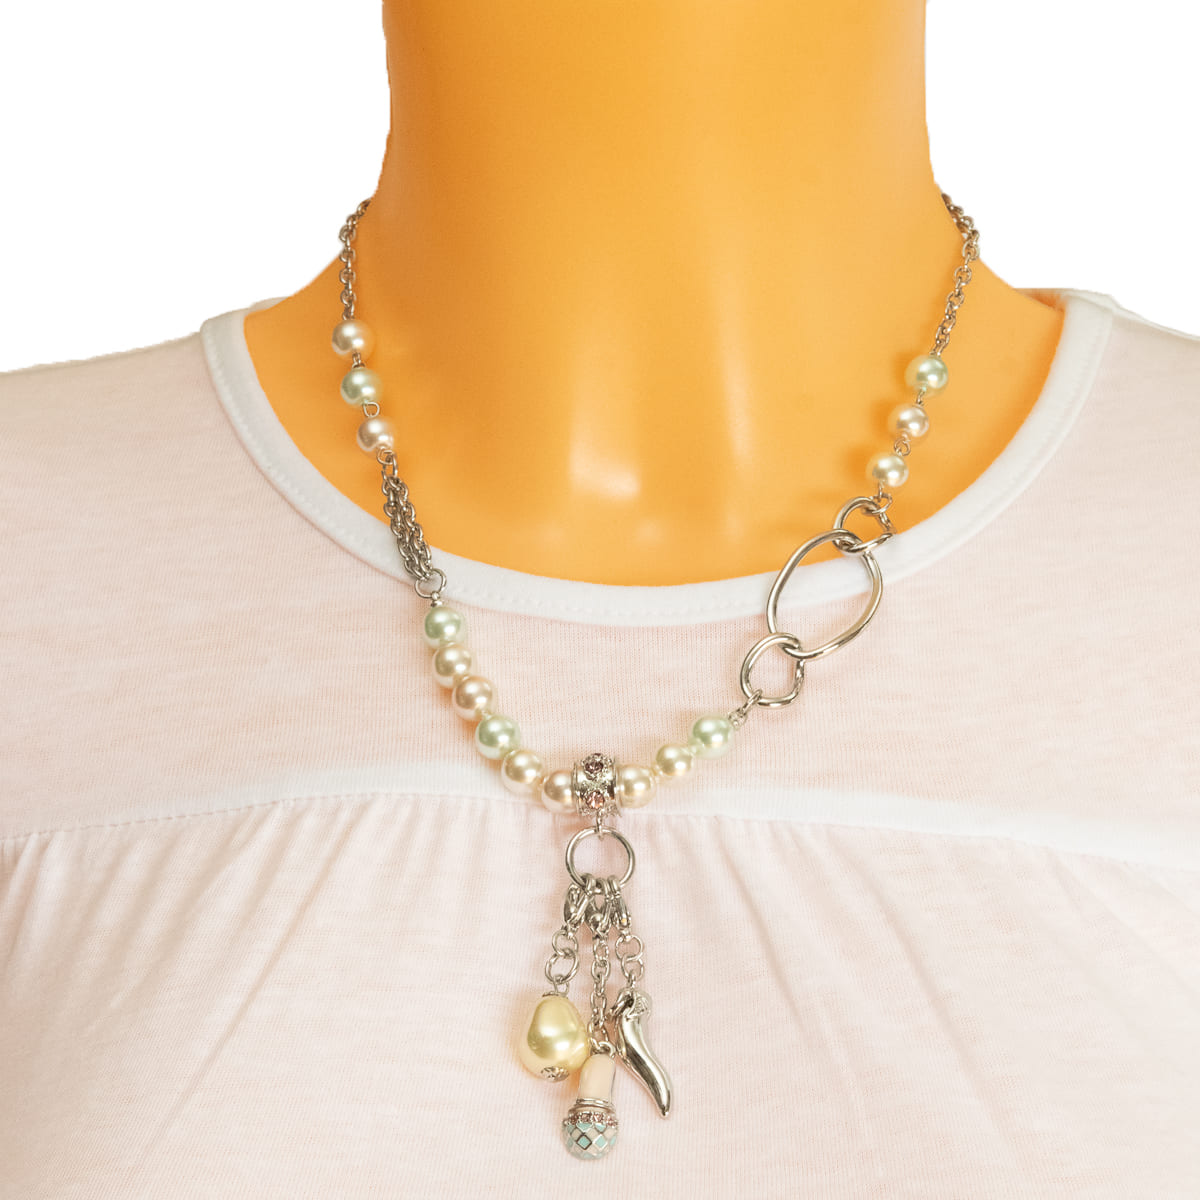 K.V. Fuchs Design Schmuck Damen Halskette in silber mit Perlen in grün, rosa, weiß und Zirkonia in violett »K-3007«